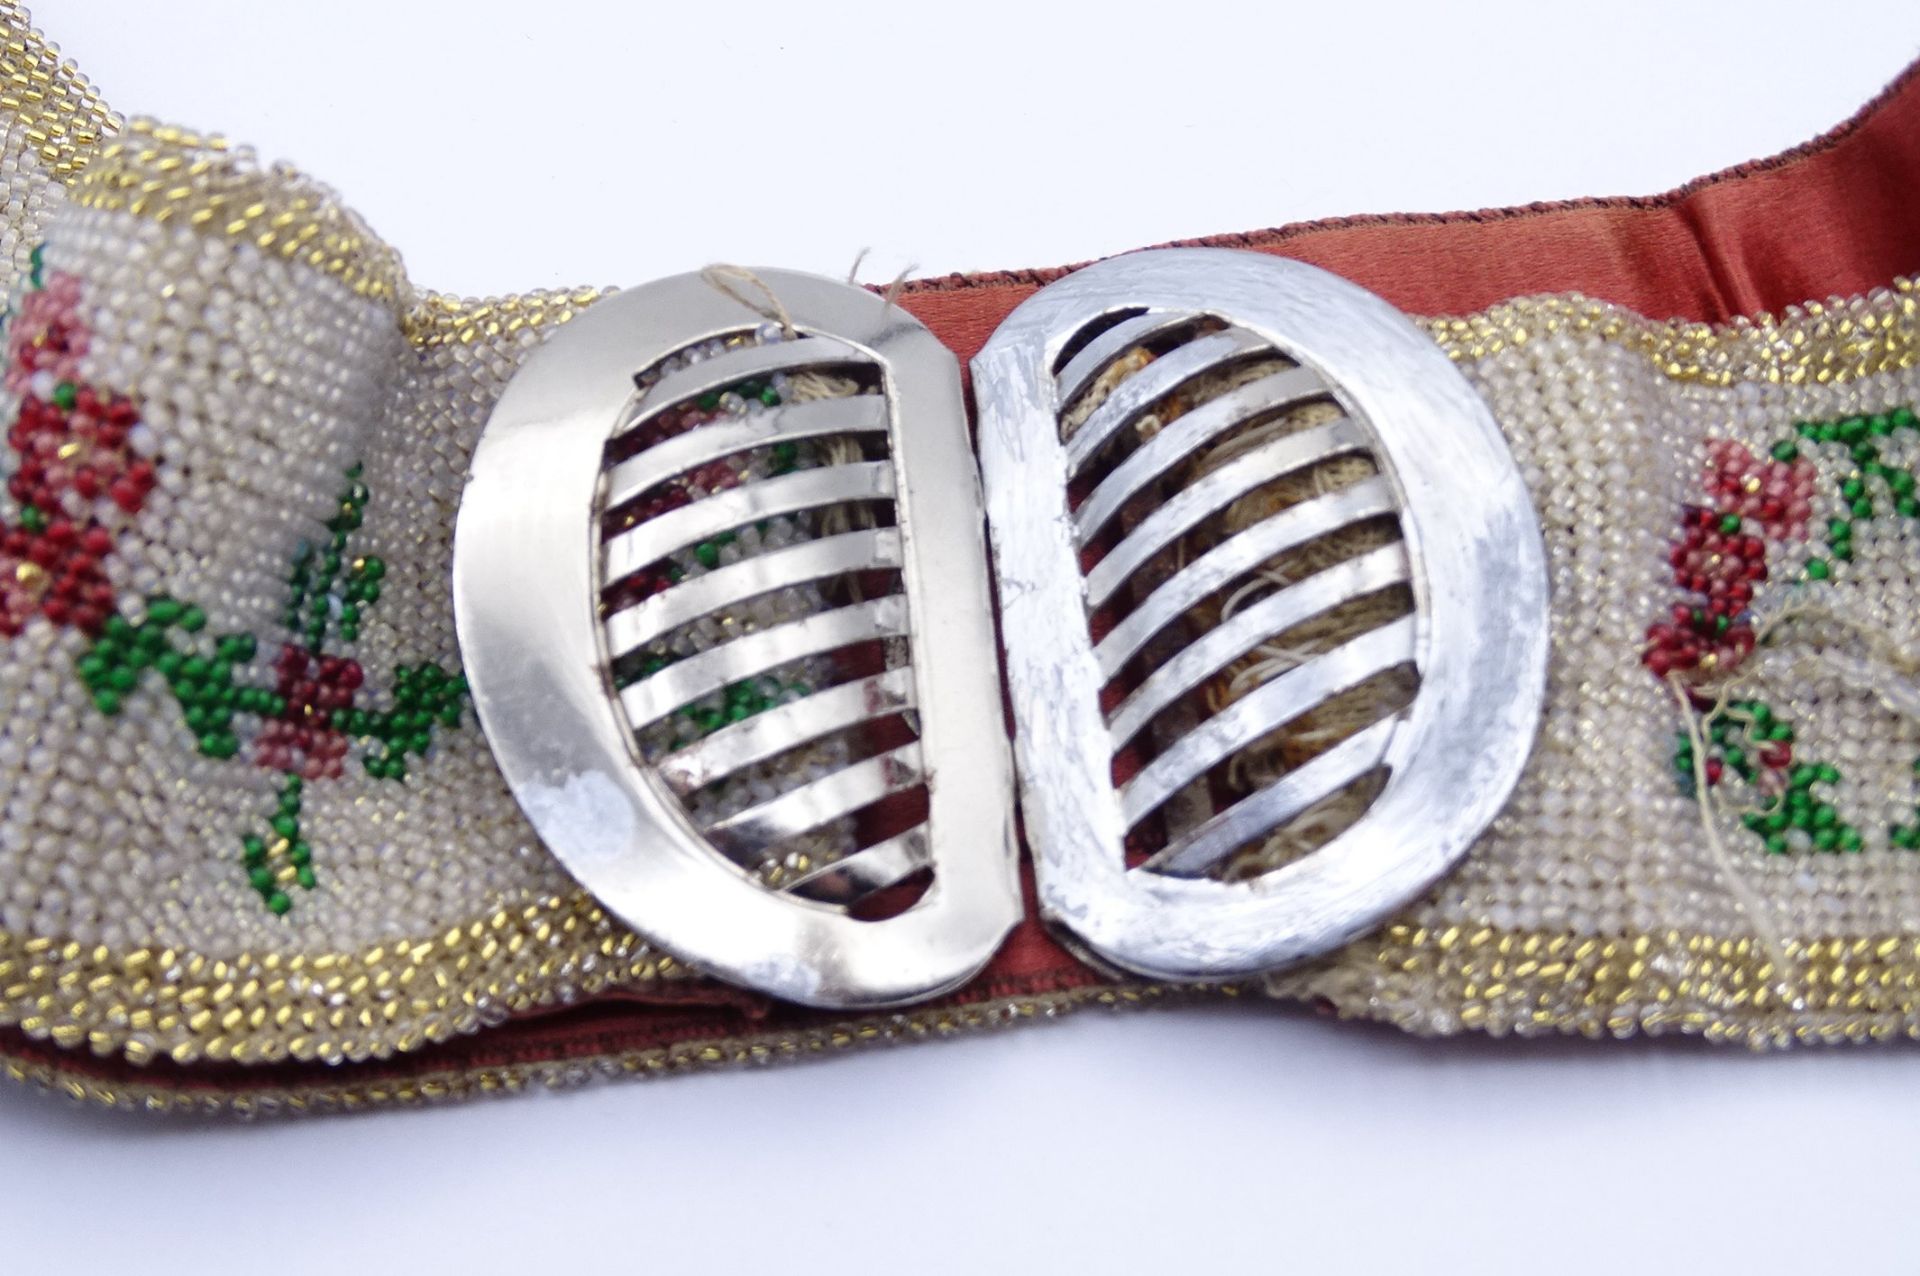 Trachtengürtel mit Perlenstickerei, 1x Faden gezogen, Metallschnalle, Alters- und Gebrauchsspuren - Bild 2 aus 6